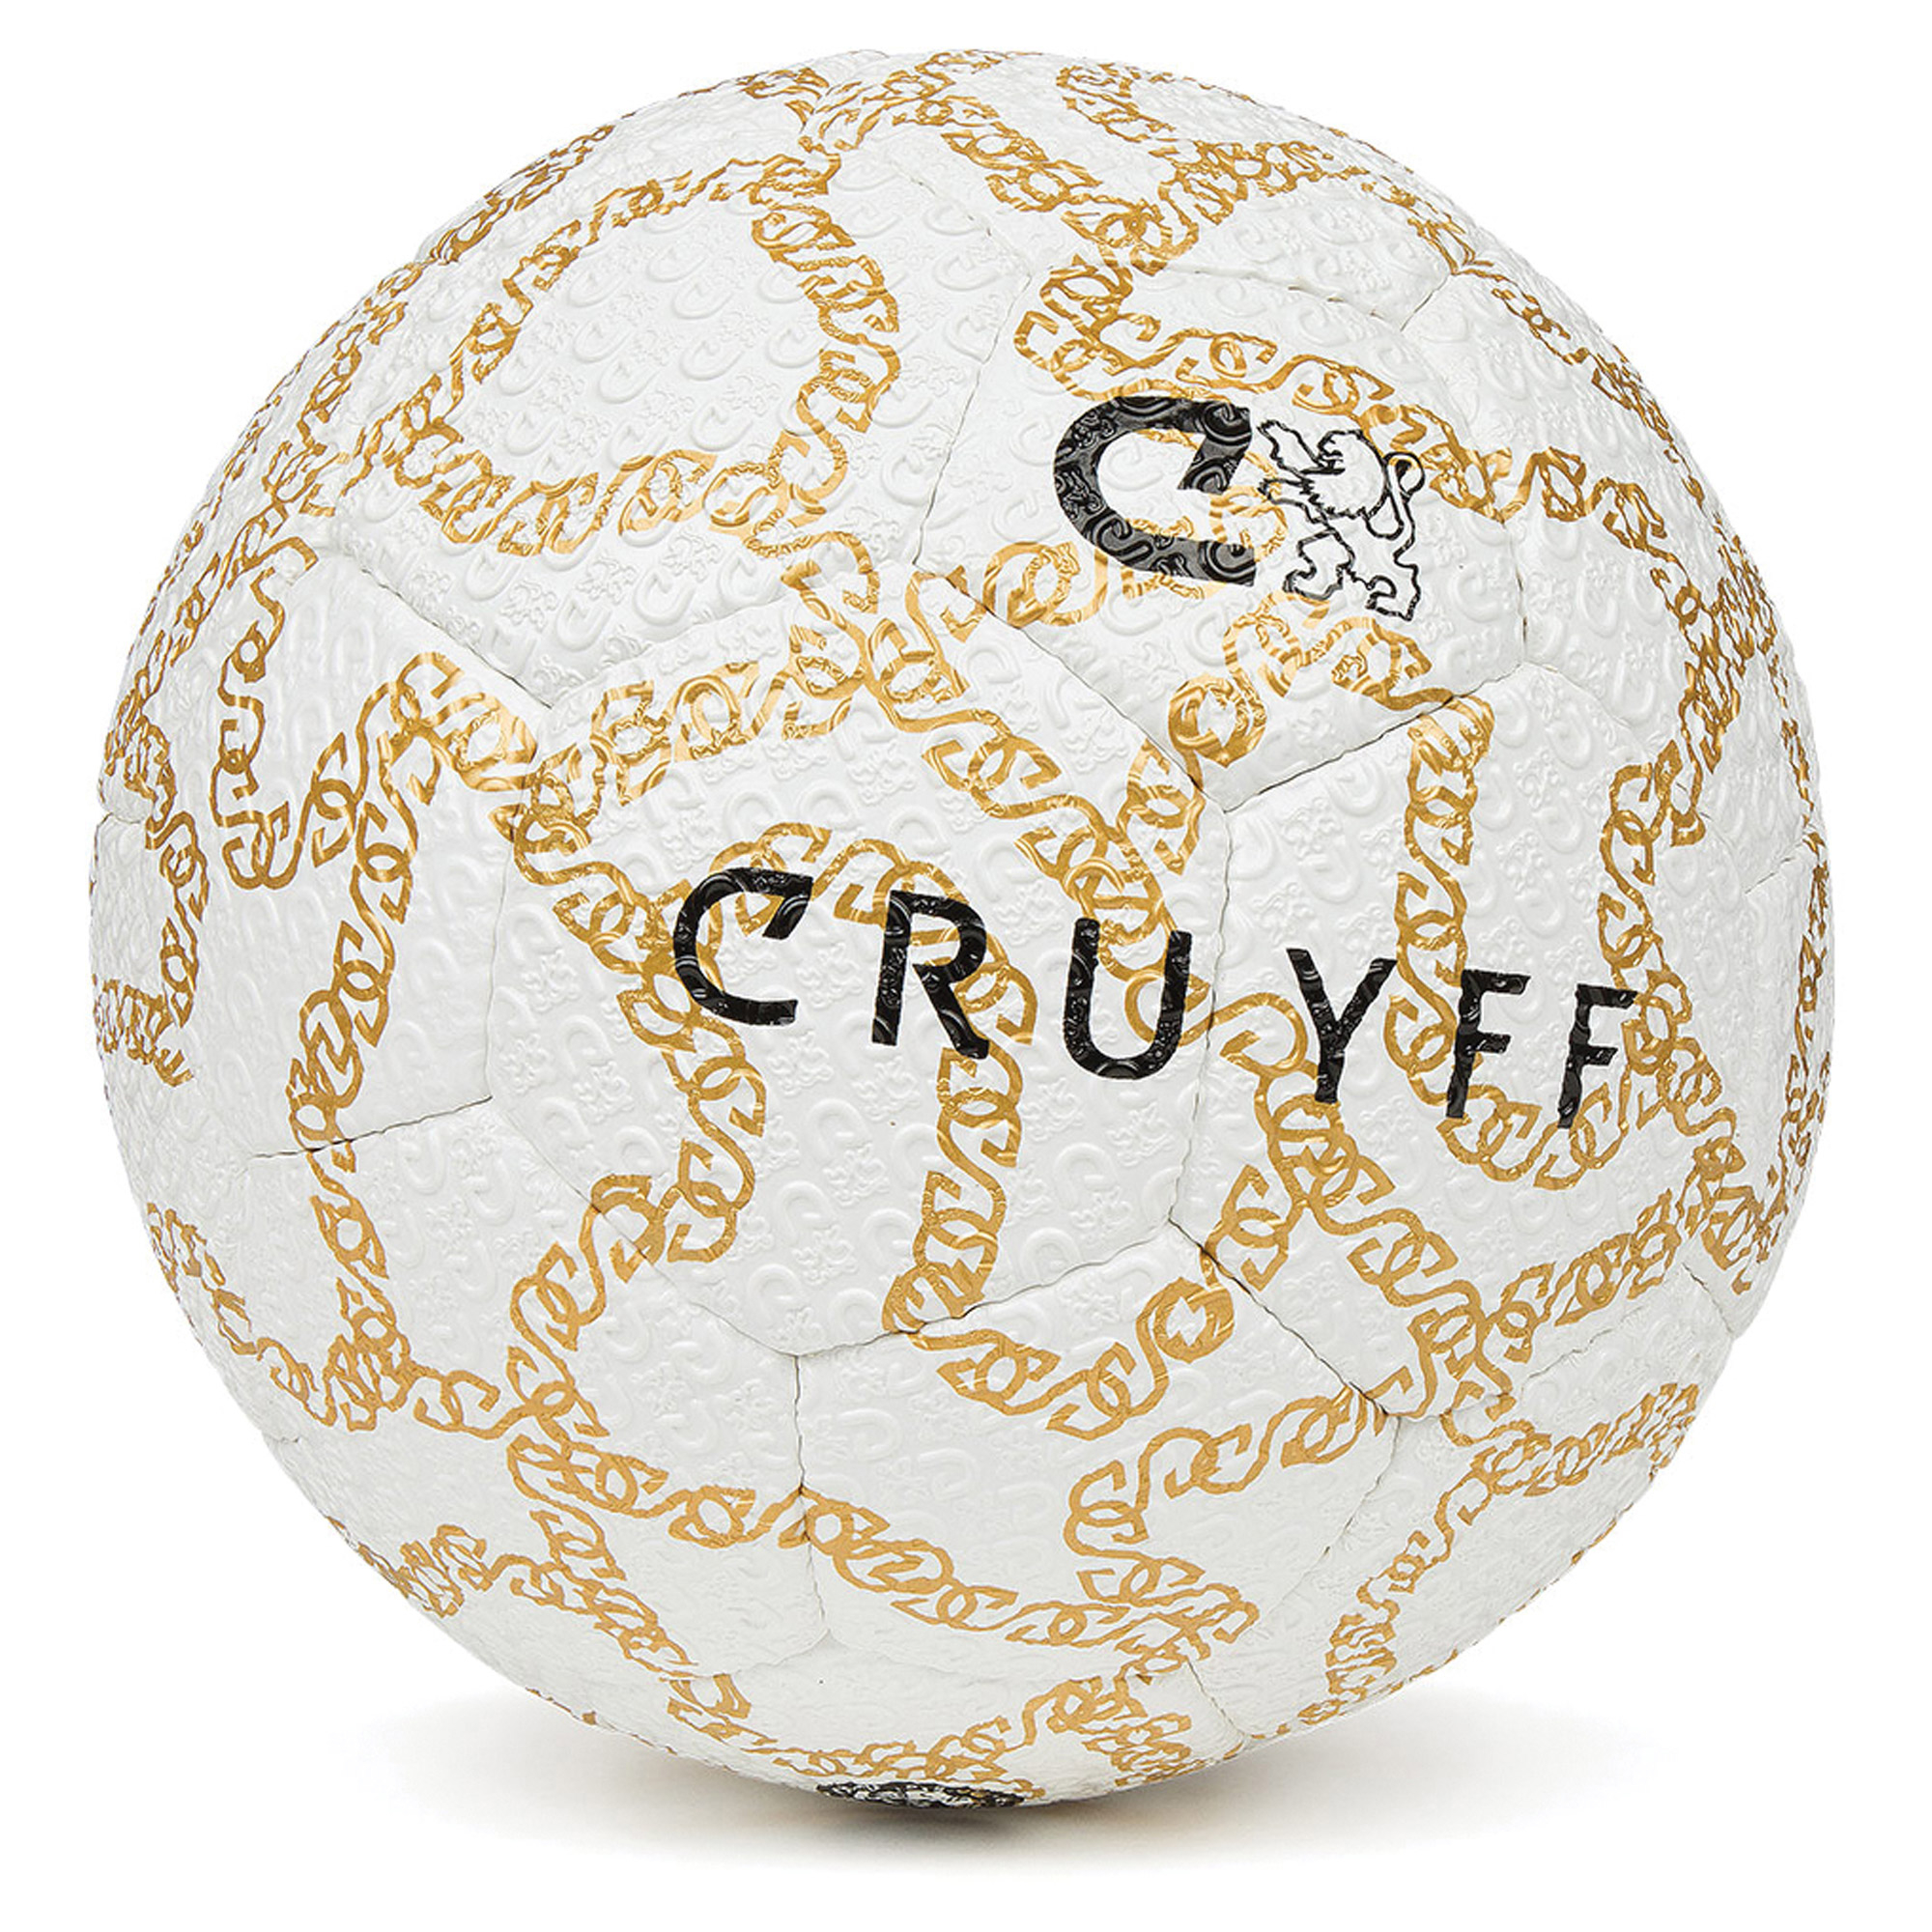 ballon de Football Cruyff Rosario